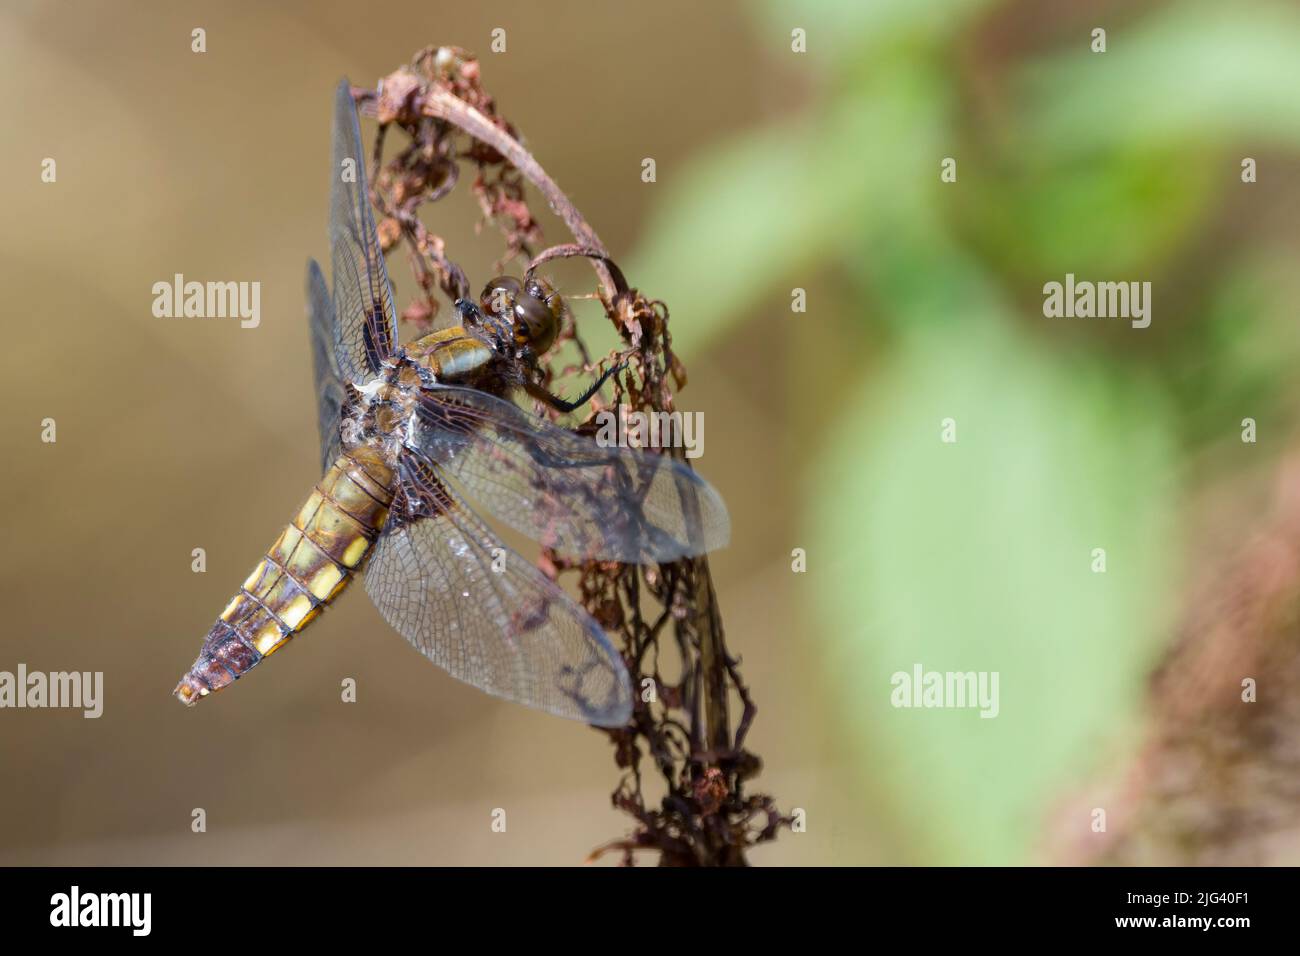 Chaser di corpo largo (libellula depressia) femmina dragonfly appiattito addome marrone con macchie gialle sui lati base marrone scuro alle ali appollaiato sulla pianta Foto Stock